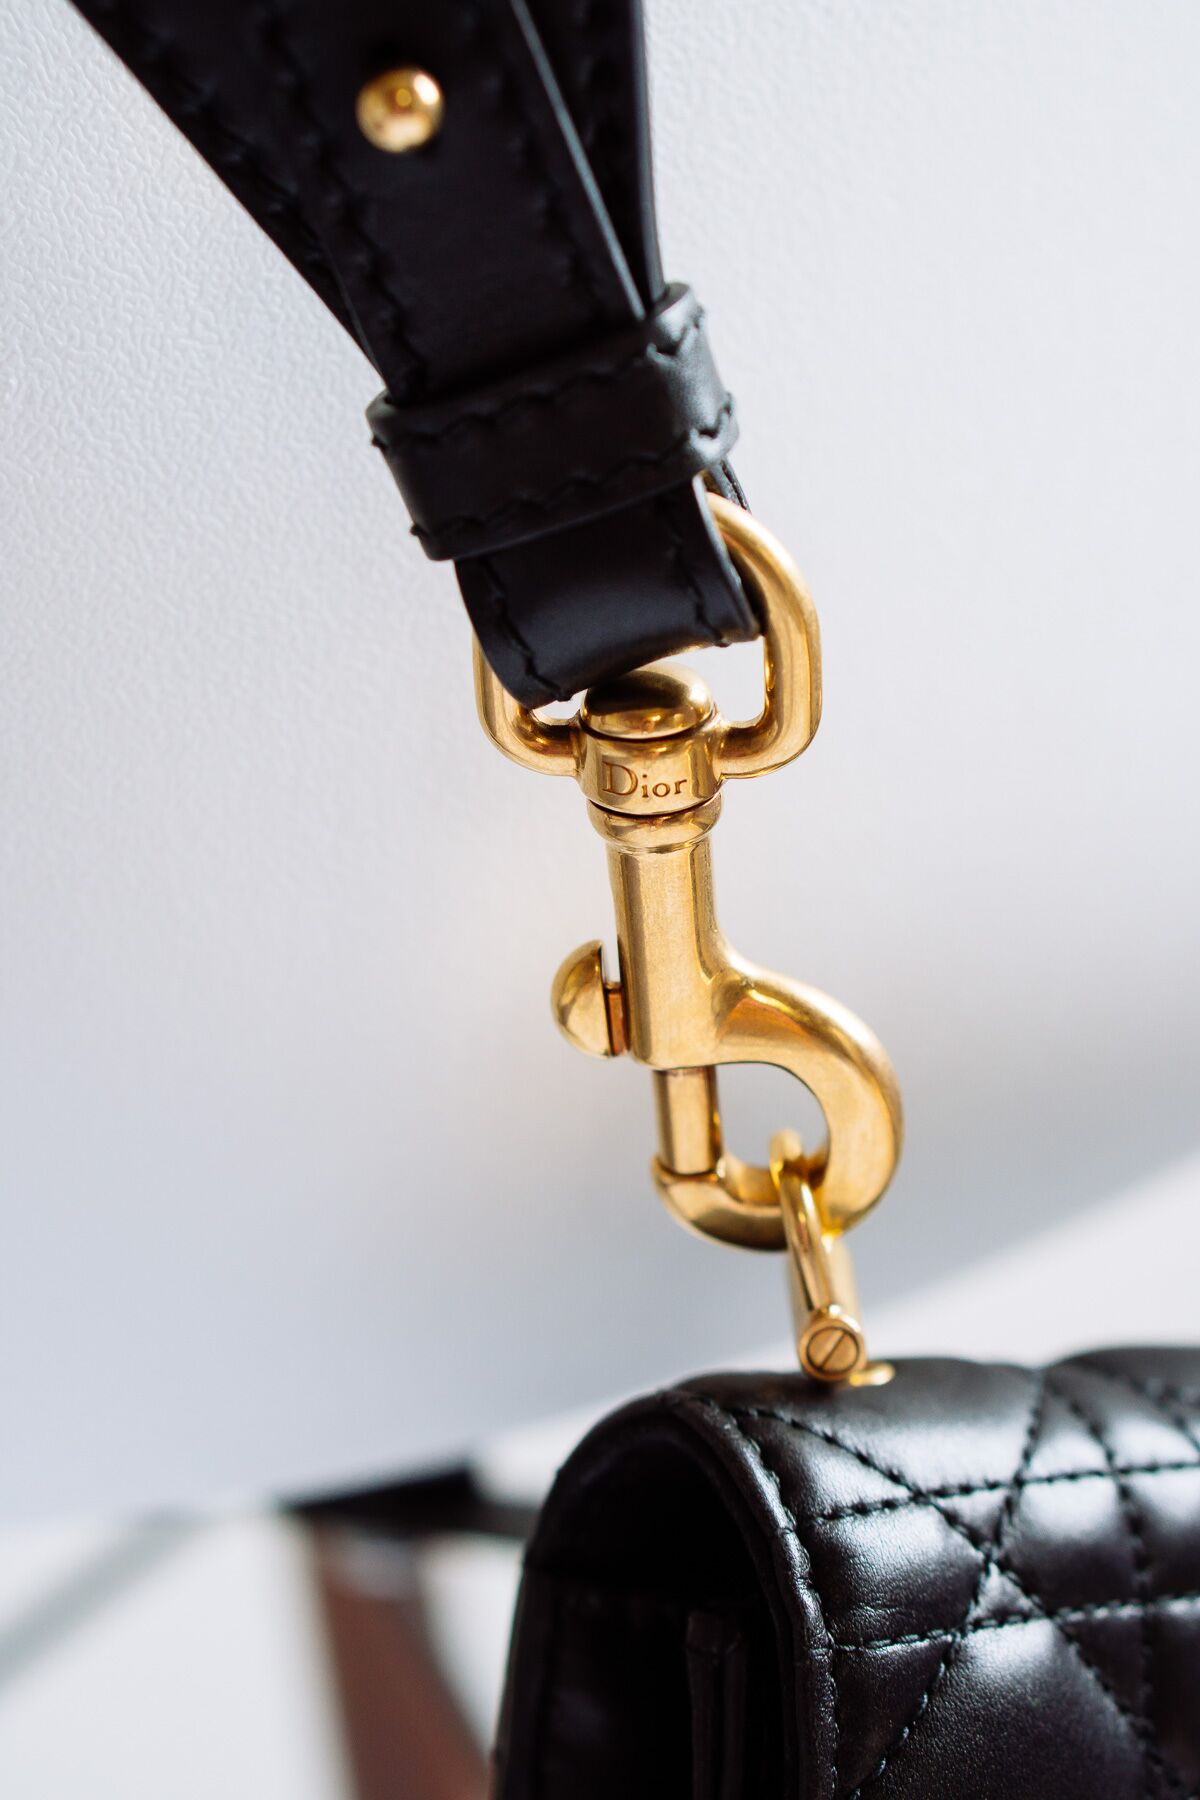 Up Close with the Dior Addict Bag - PurseBlog